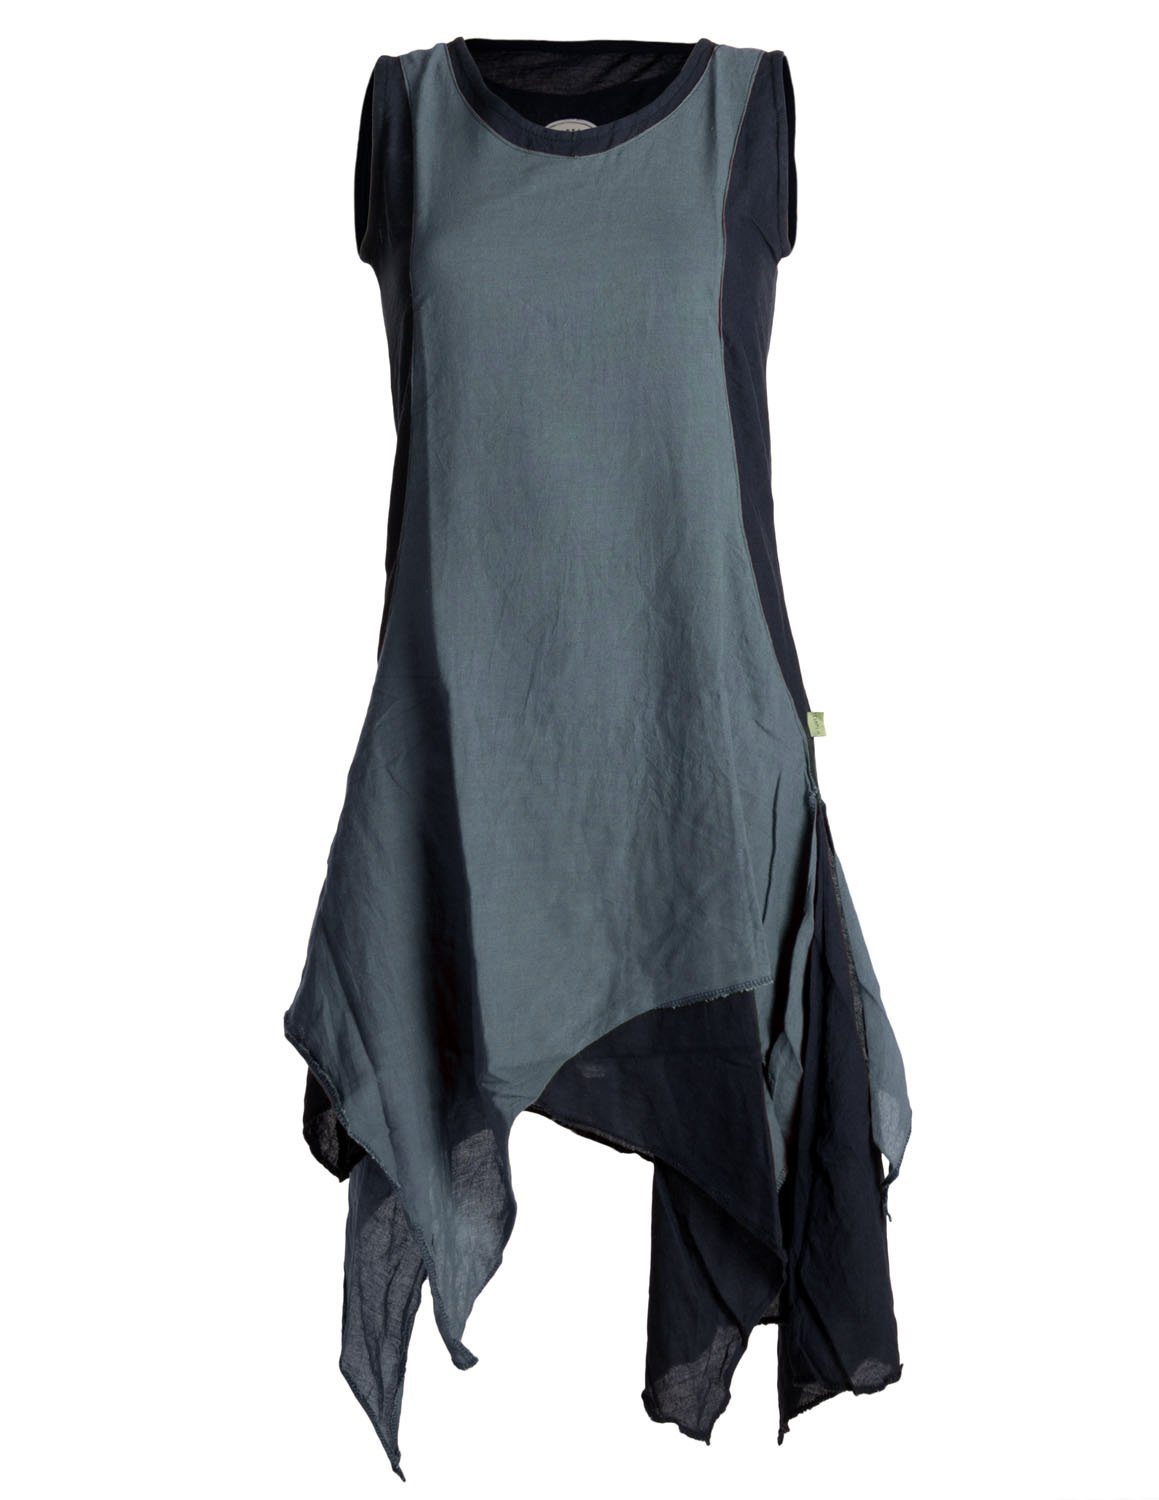 Vishes Sommerkleid Baumwolle Style Hippie Goa, Boho, handgewebte Lagenlook Ärmelloses Kleid schwarz-grau